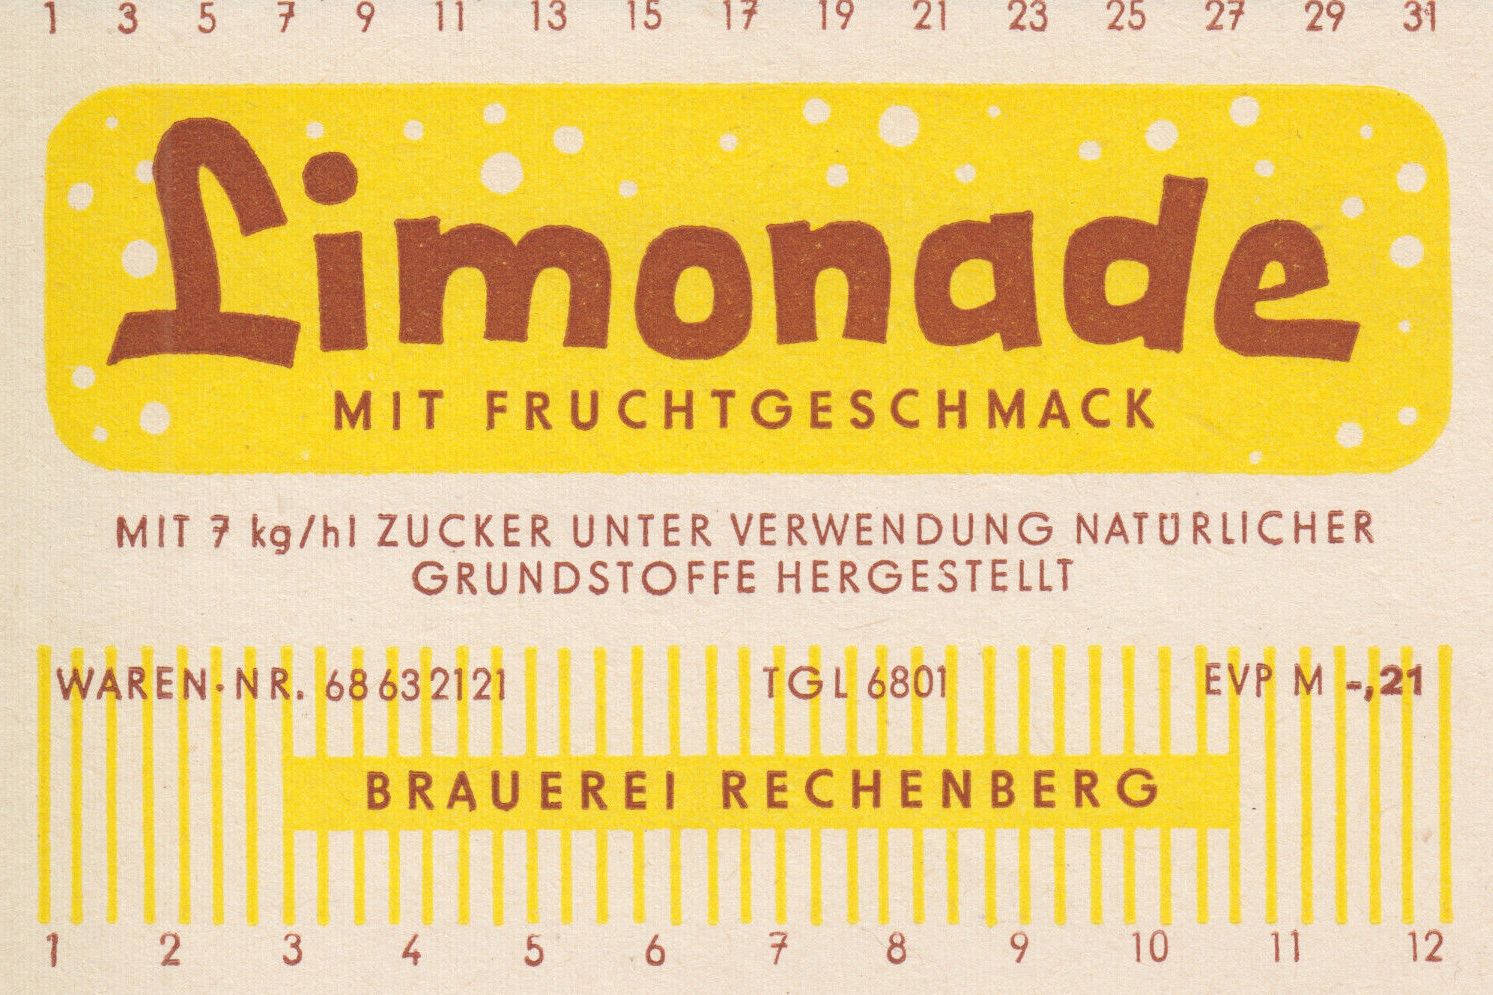 Limonade mit Fruchtgeschmack, Brauerei Rechenberg (Bild: historisches Etikett)